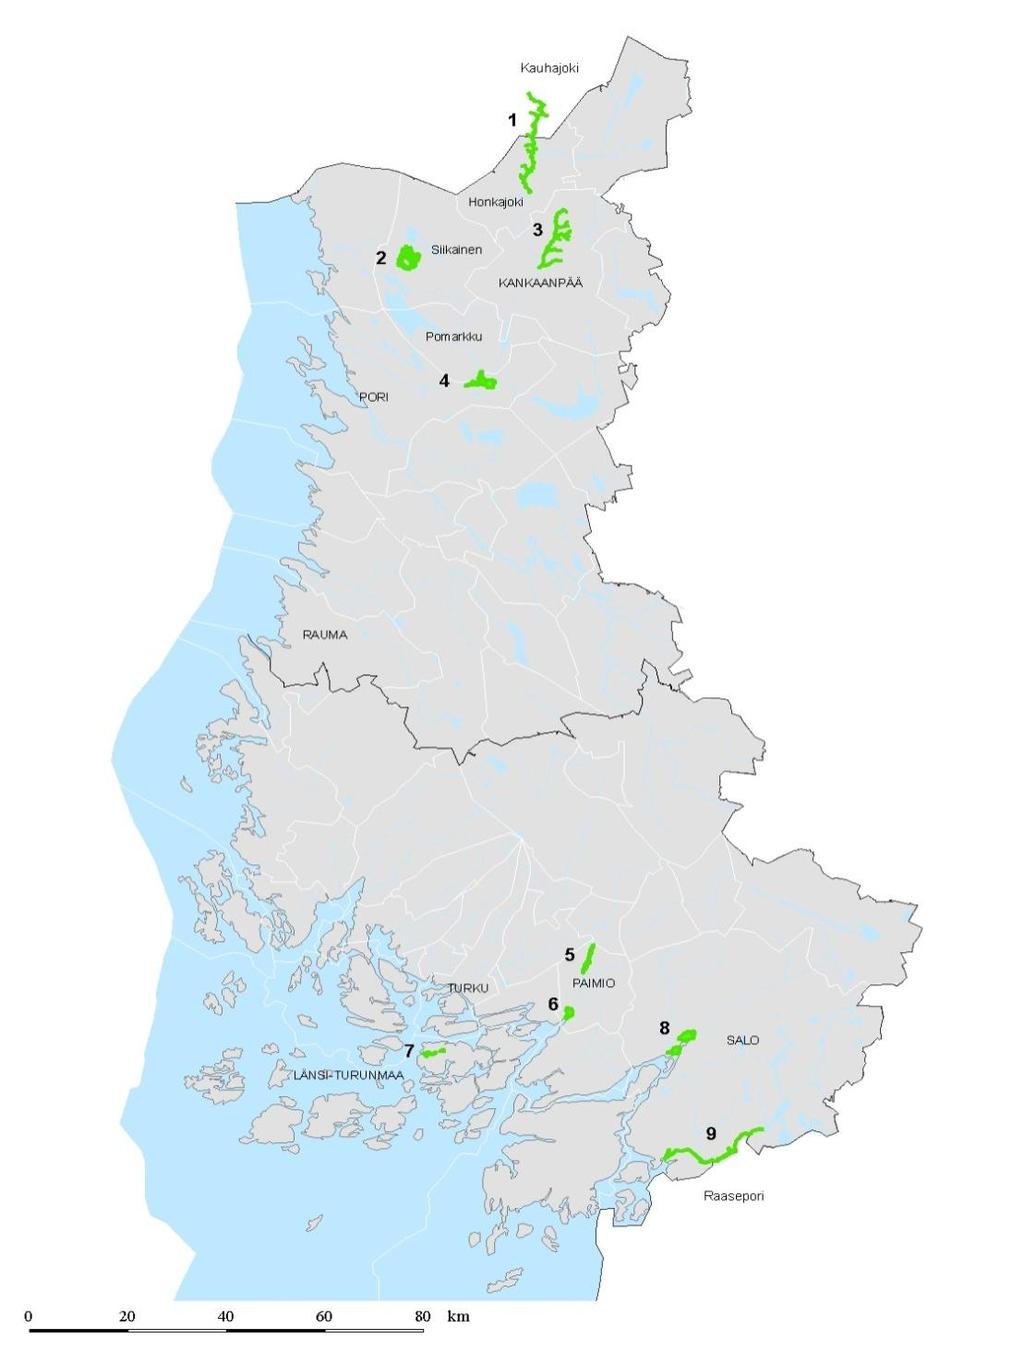 Satakunta 1) Karvianjoen kosket (80 ha, Honkajoki ja Kauhajoki) 2) Niemijärvi-Itäjärvi (738 ha, Siikainen) 3) Pukanluoma (25 ha, Kankaanpää) 4) Inhottujärvi (604 ha, Pori ja Pomarkku) Varsinais-Suomi